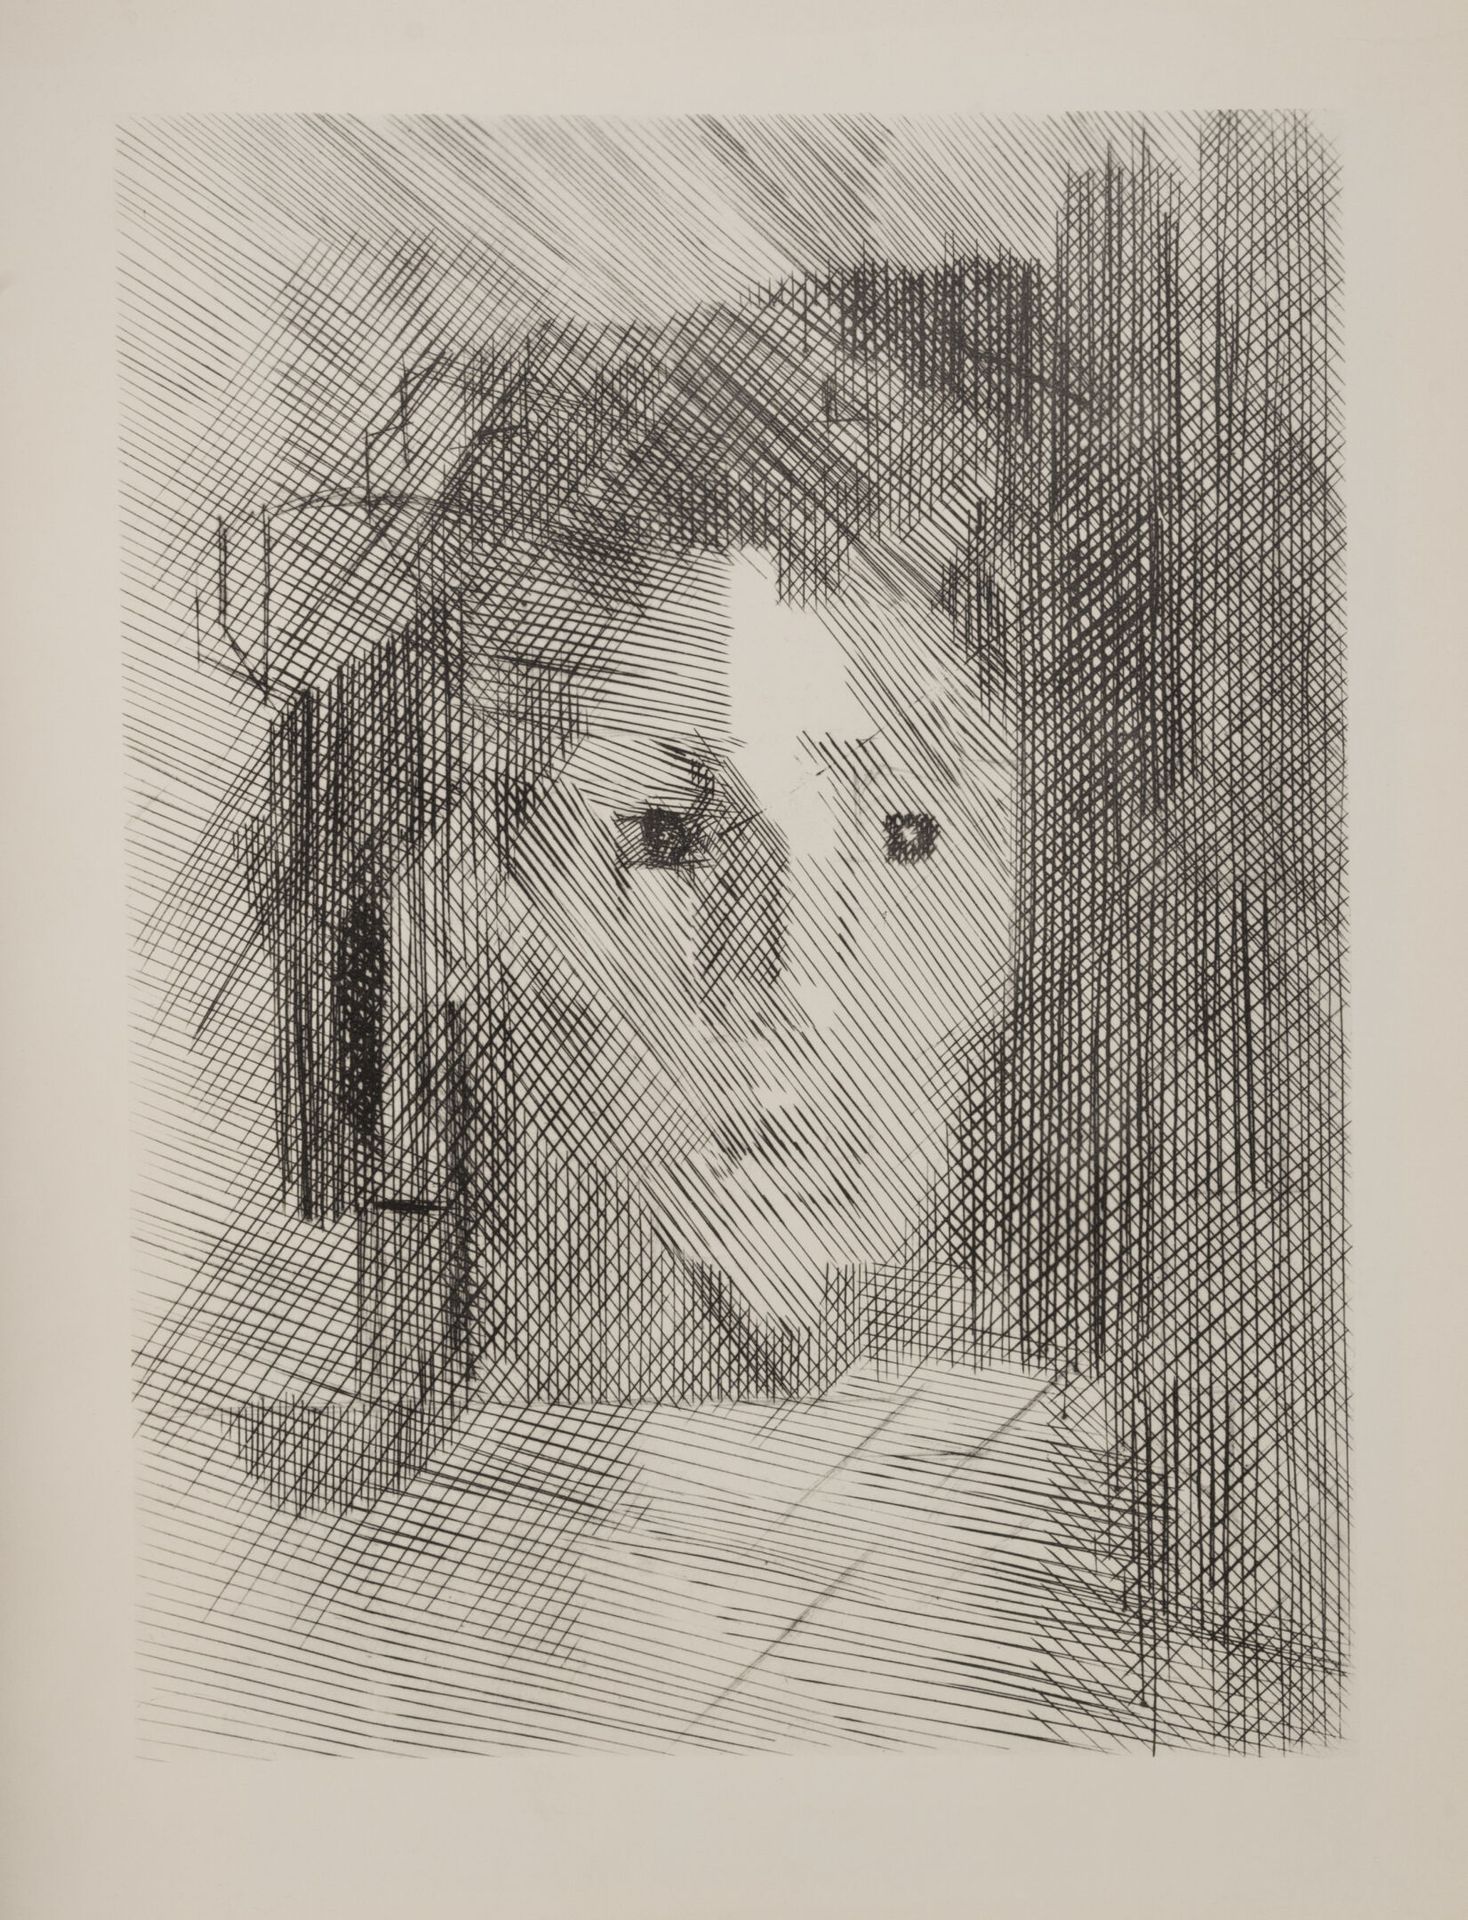 D'après Jacques VILLON (1875-1963) 一个人的肖像。

在纸上印刷的复制品。

无符号。

66 x 50厘米。

褶皱和污渍。